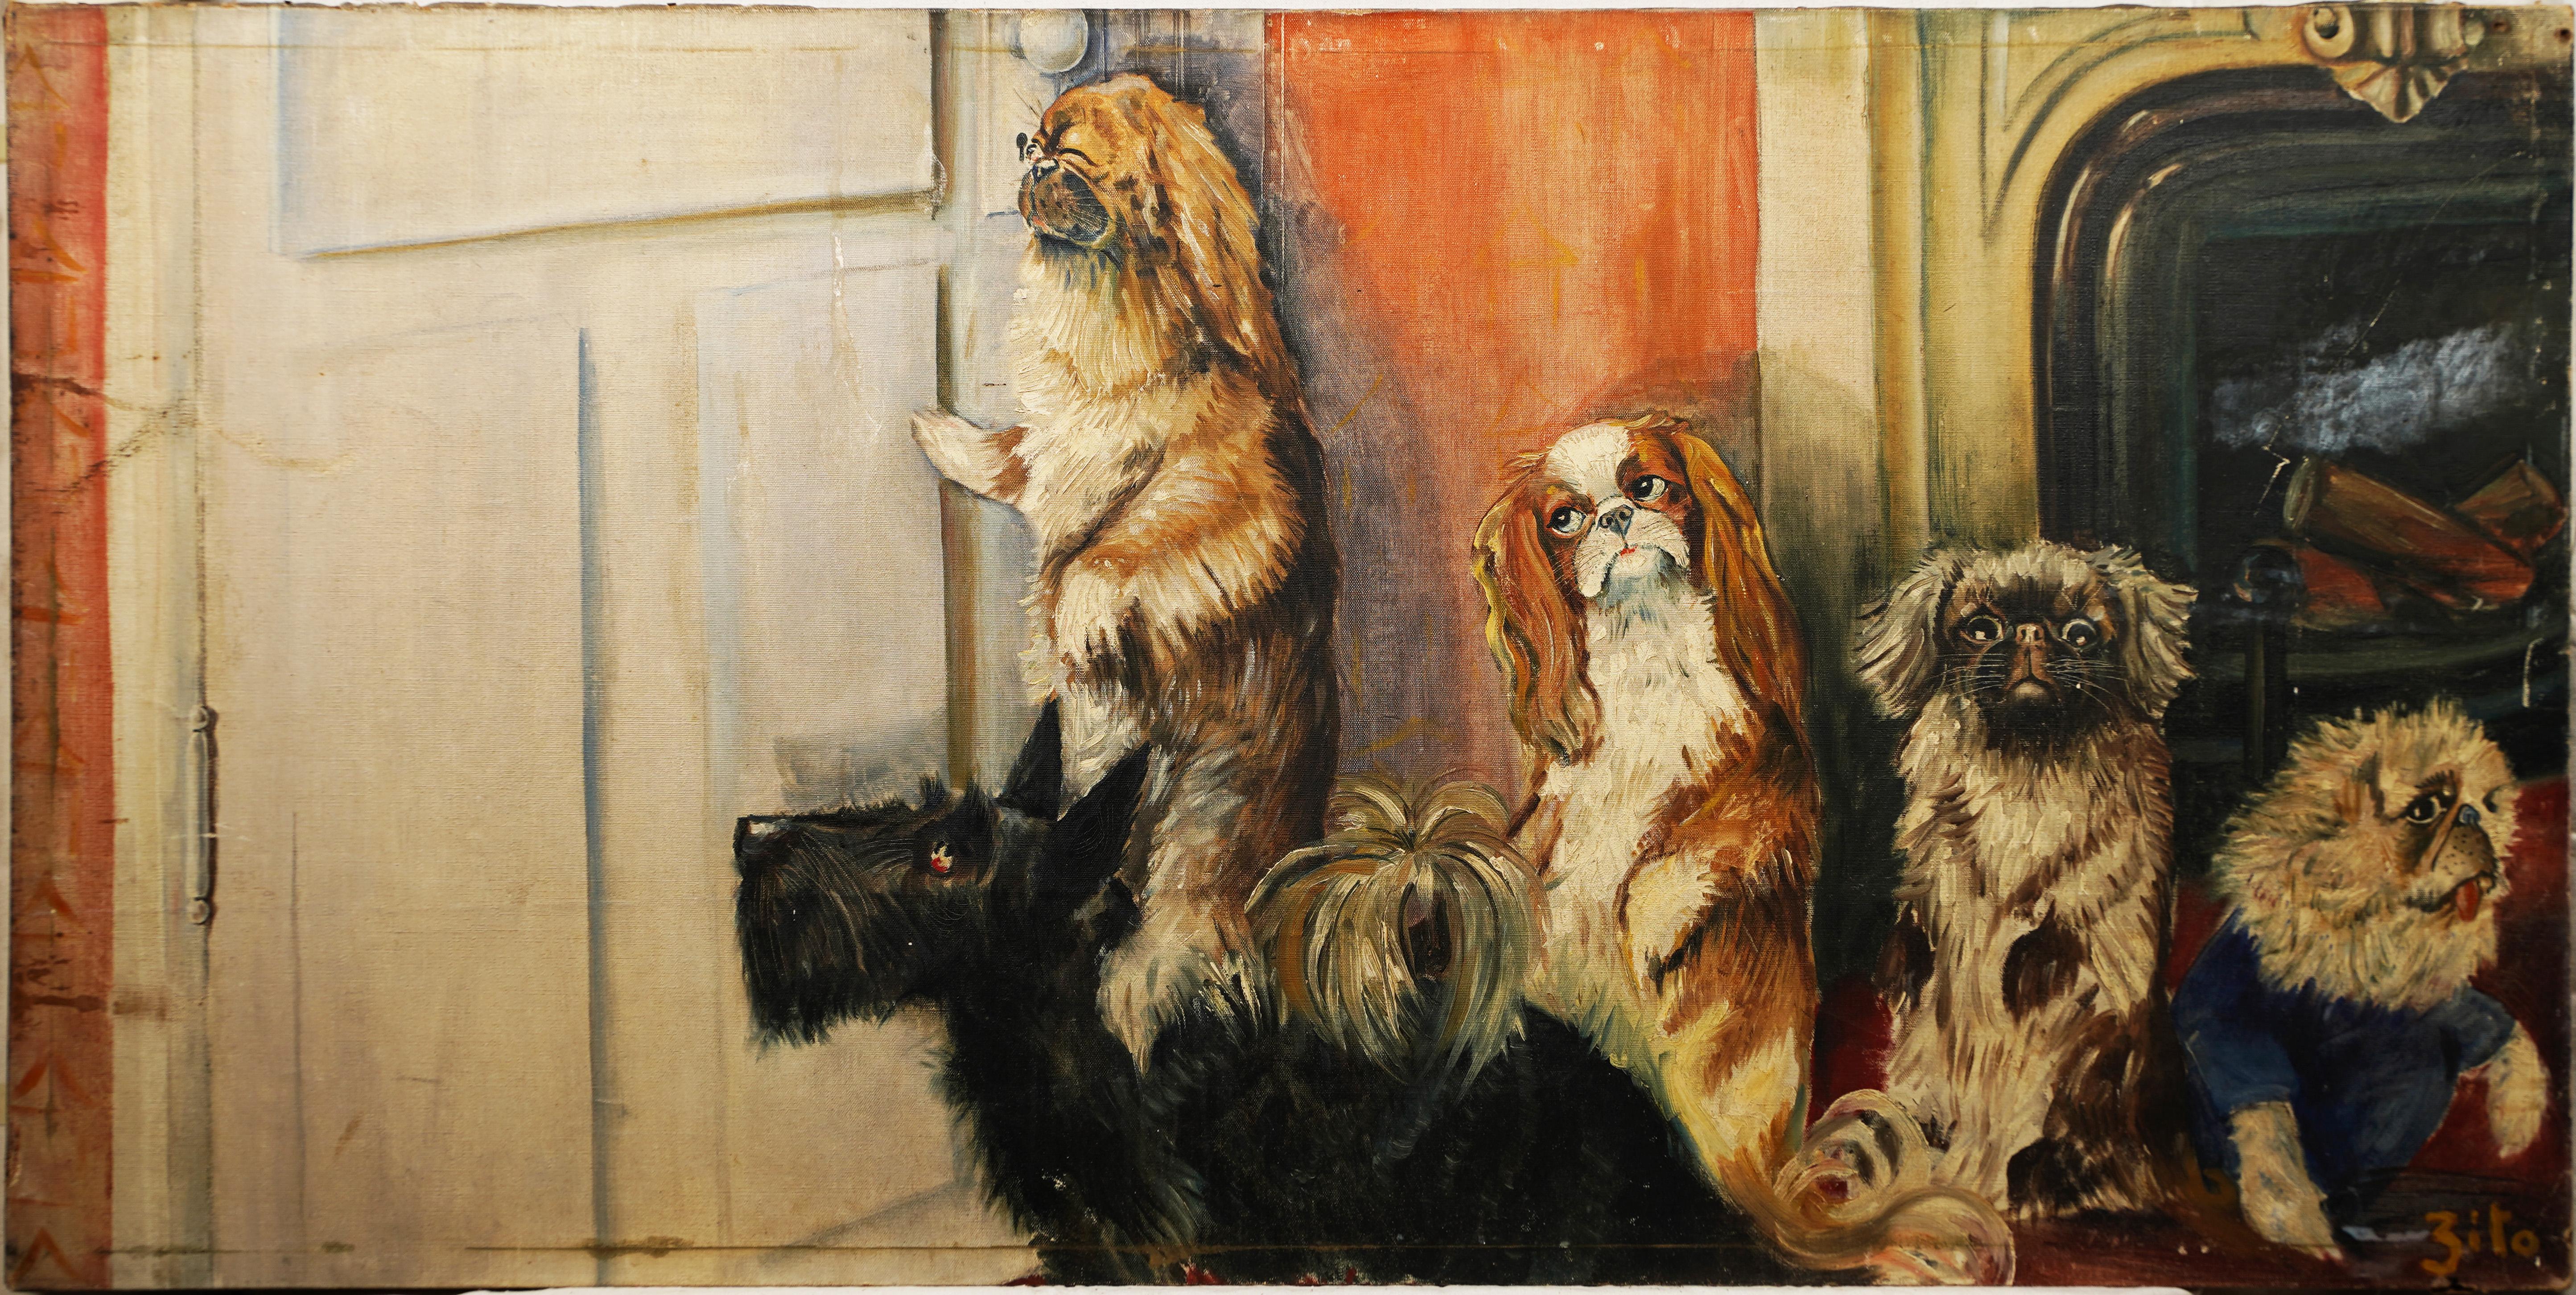 Grand portrait ancien de chien d'art populaire américain « Peep Hole », peinture à l'huile intérieure